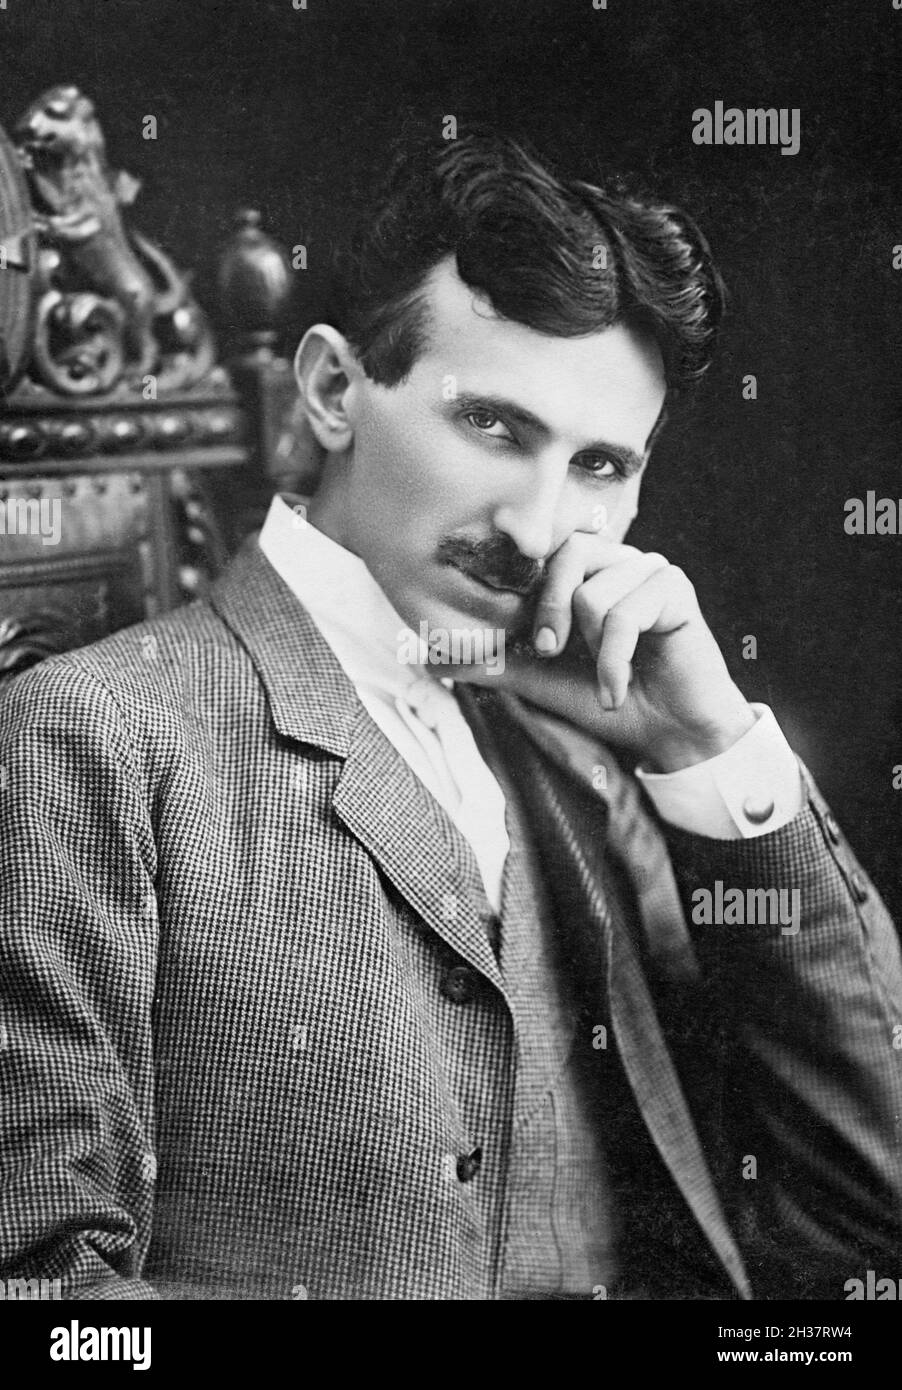 Nikola Tesla (1856-1943) in den frühen Vierzigern. Tesla war ein serbisch-amerikanischer Erfinder und Ingenieur, der vor allem für seine Arbeiten zur Wechselstromversorgung bekannt war. Stockfoto